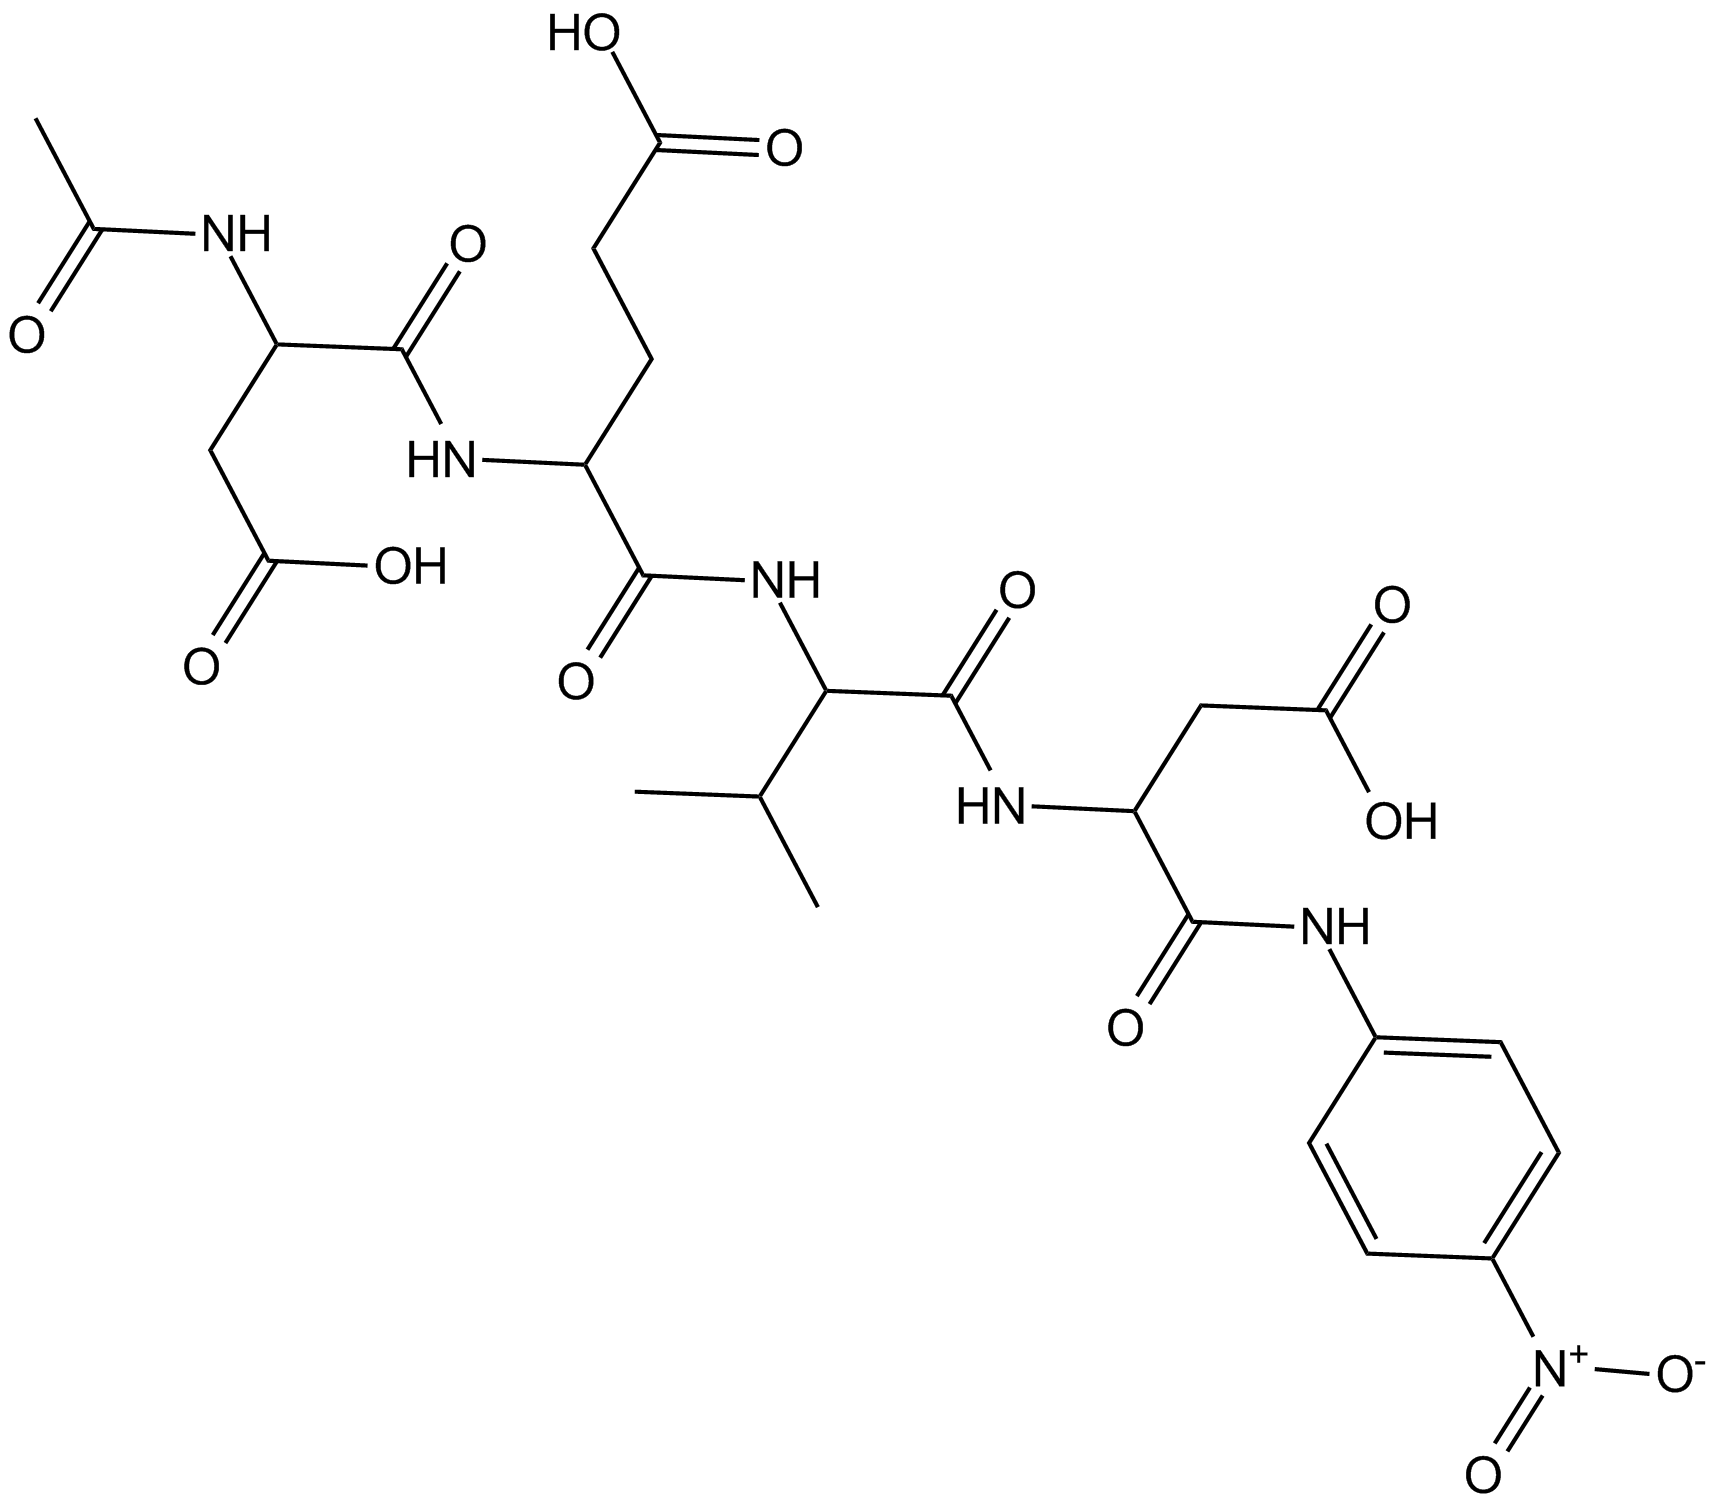 Ac-DEVD-pNA  Chemical Structure